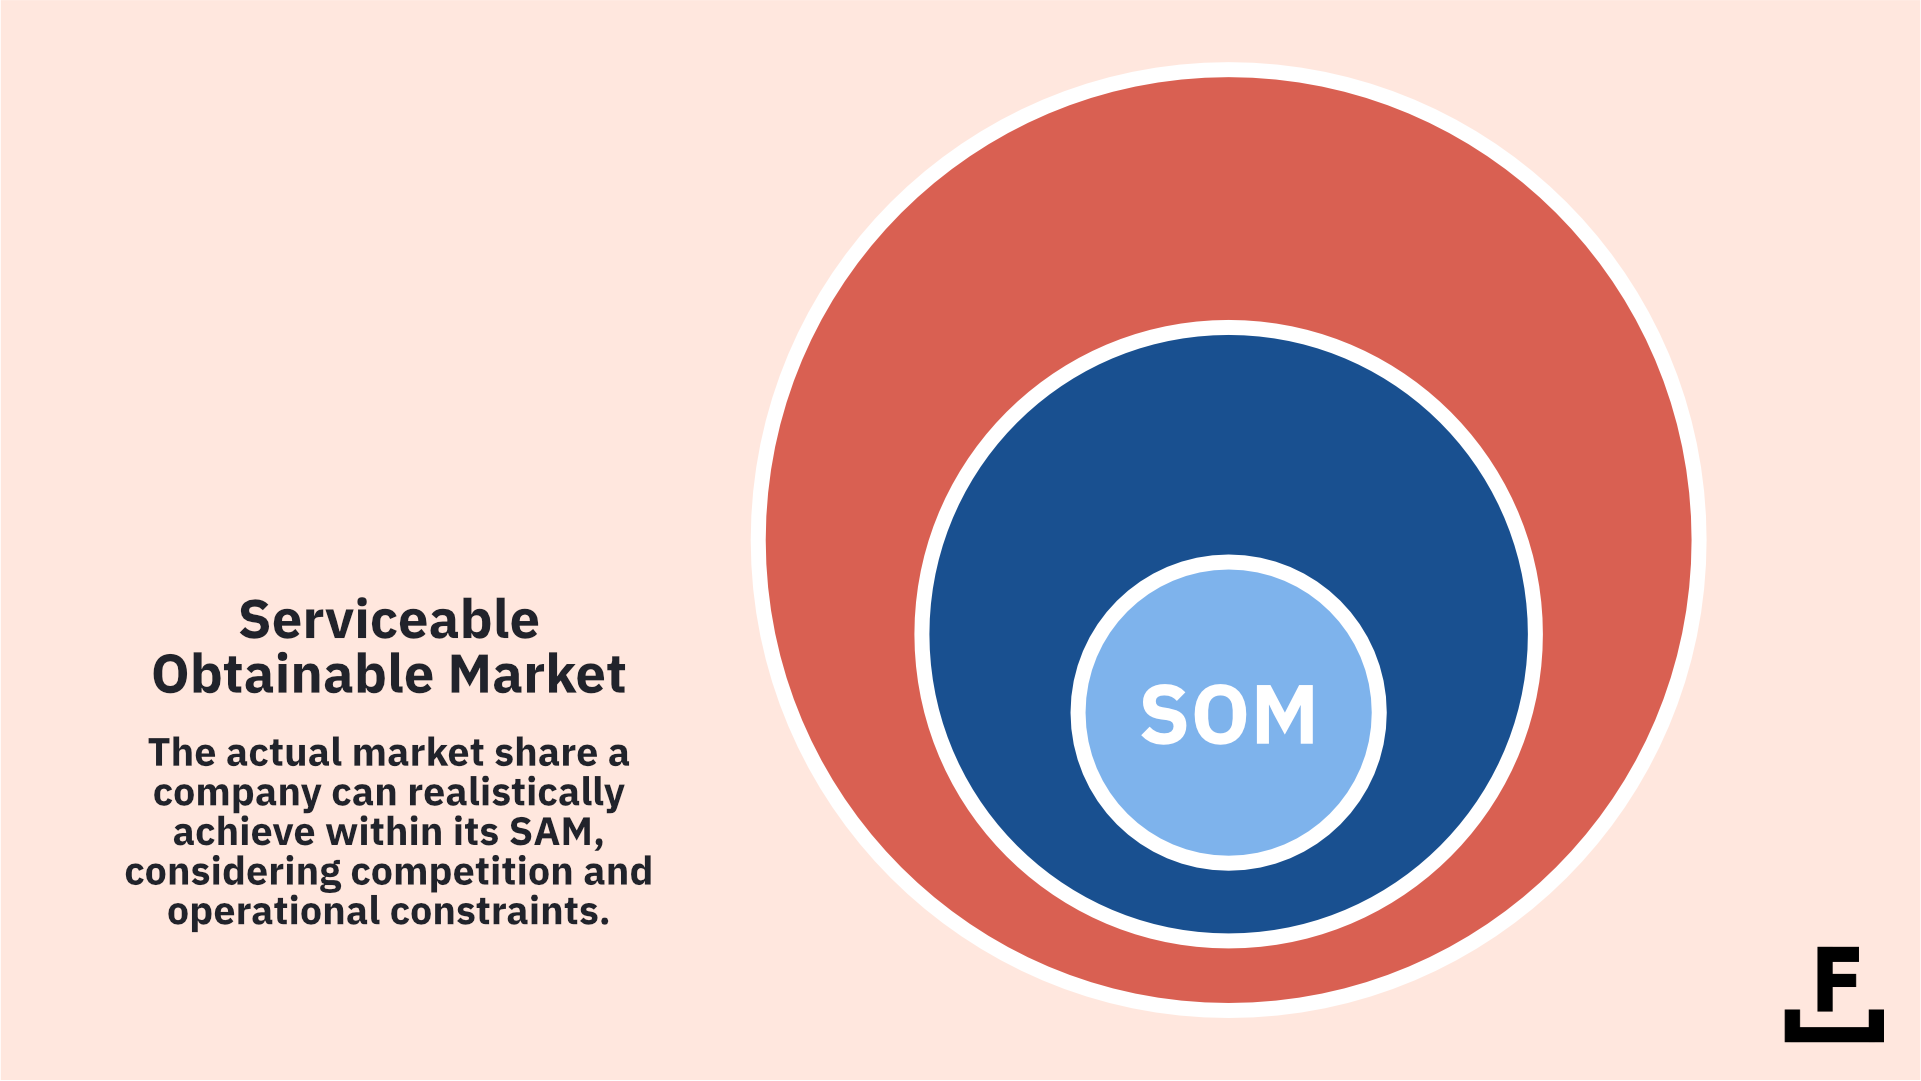 A diagram explaining what Serviceable Obtainable Market (SOM) means